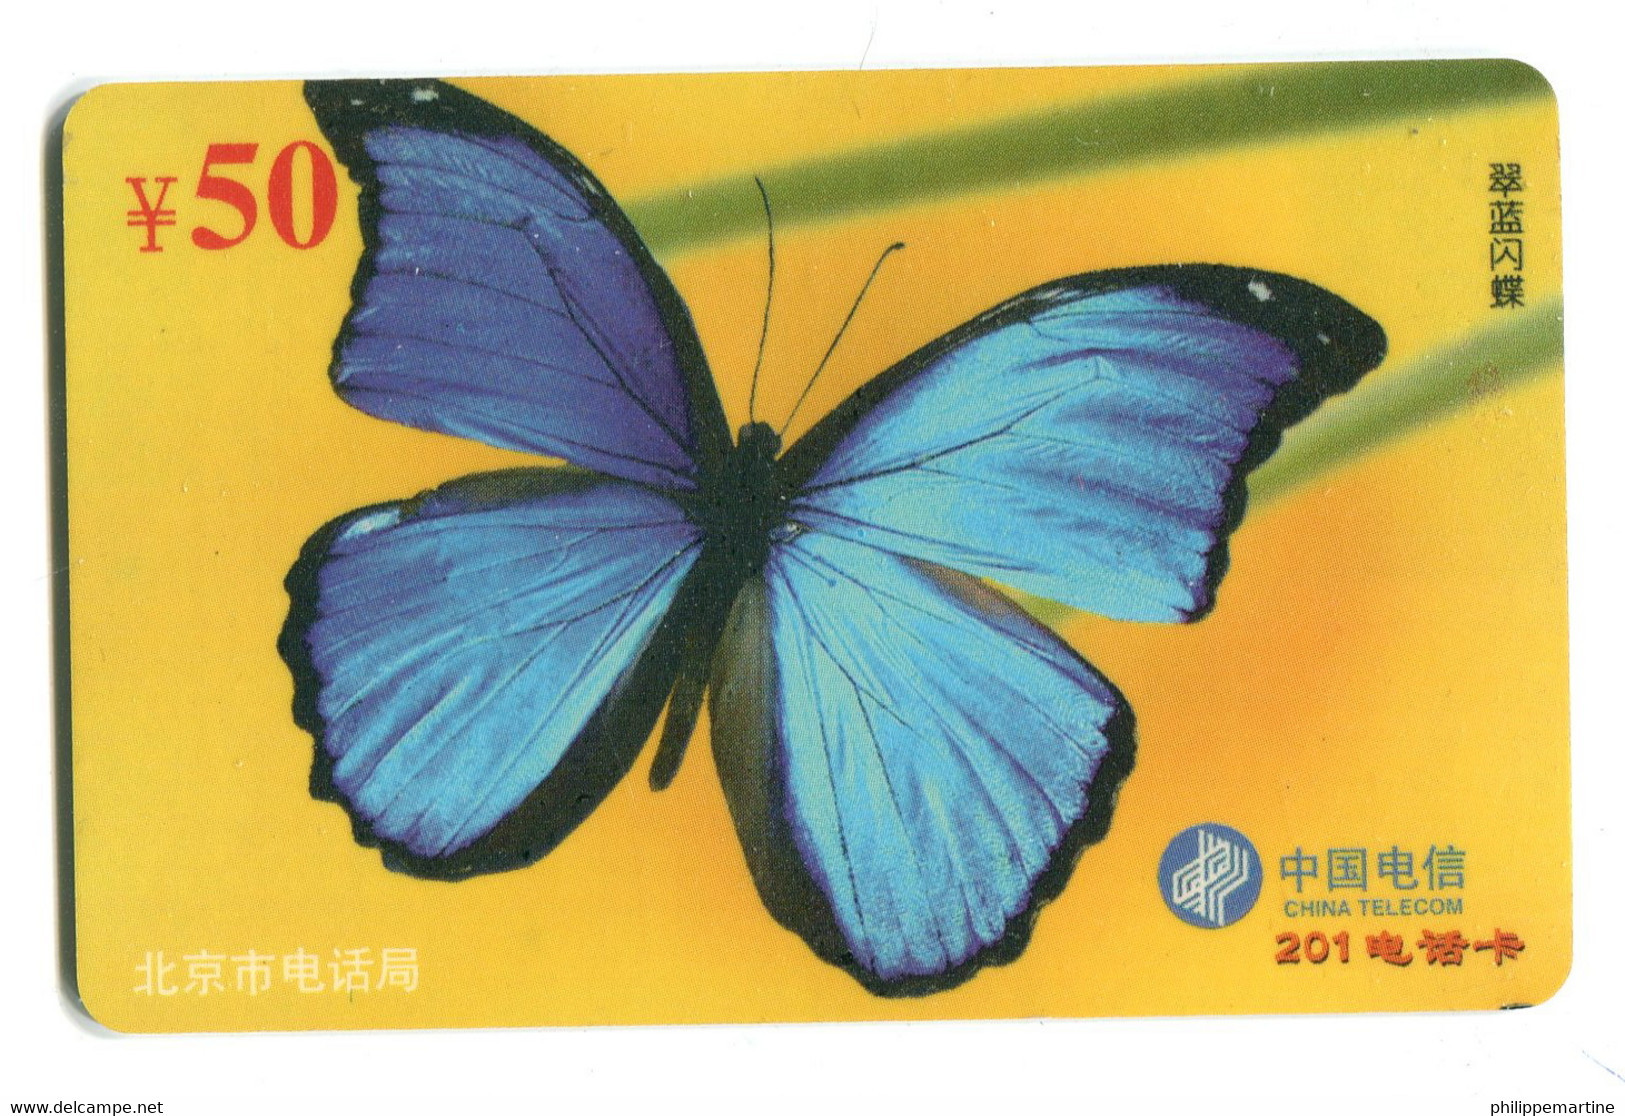 Télécarte China Télécom :  Papillon - Schmetterlinge